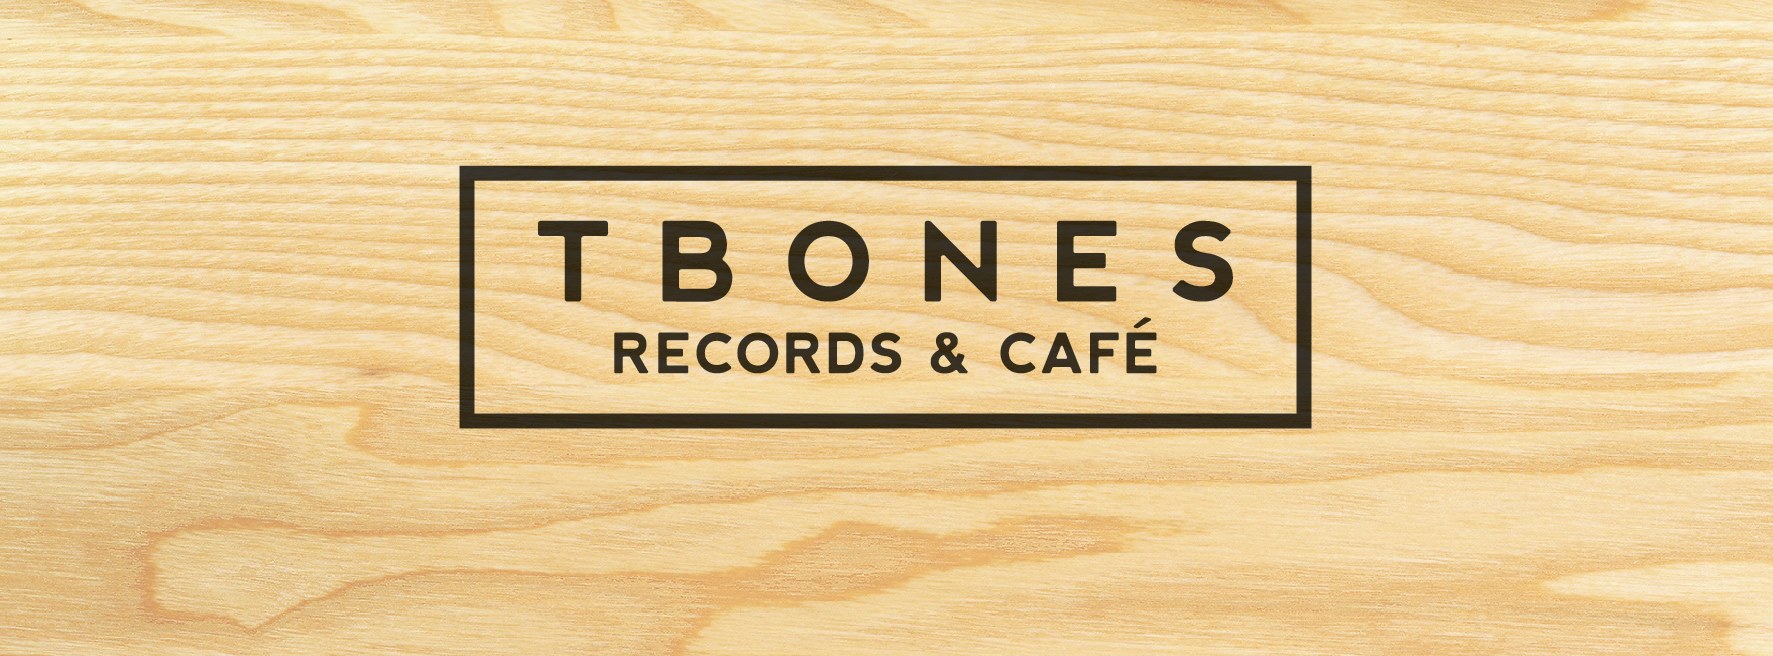 TBONES RECORDS & CAFÉ